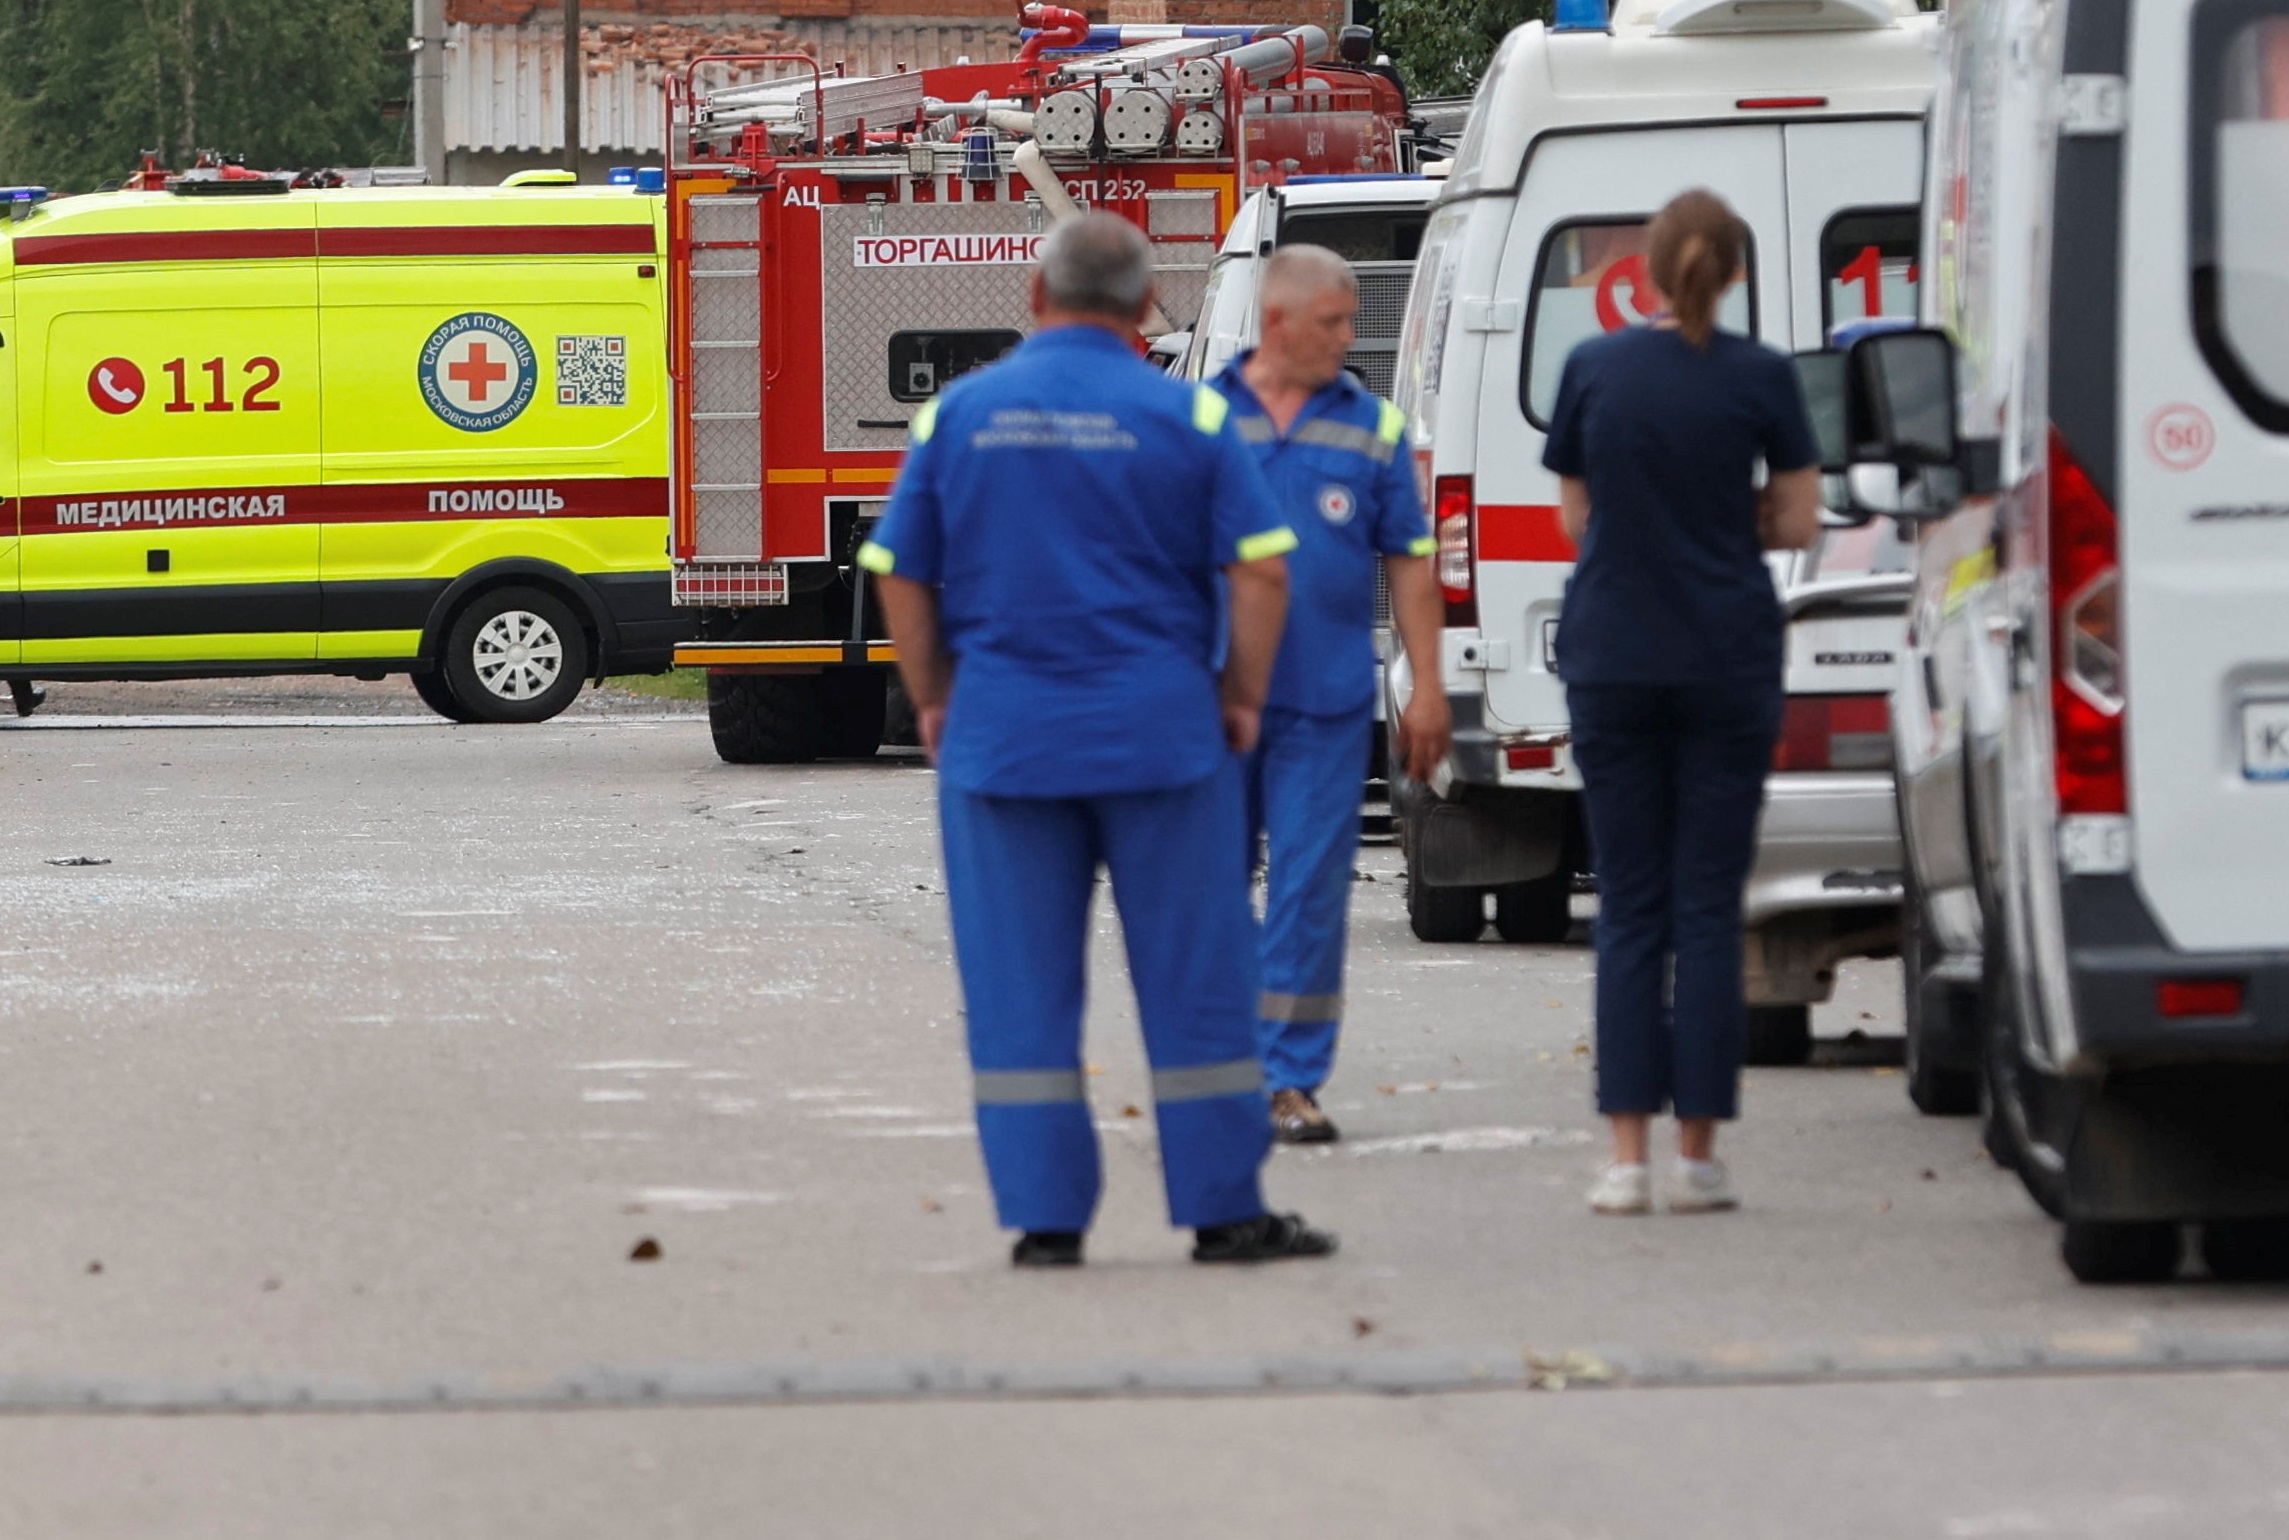 Ρωσία: Δύο νεκροί και πέντε τραυματίες από έκρηξη σε πετρελαιοπηγή της Σιβηρίας